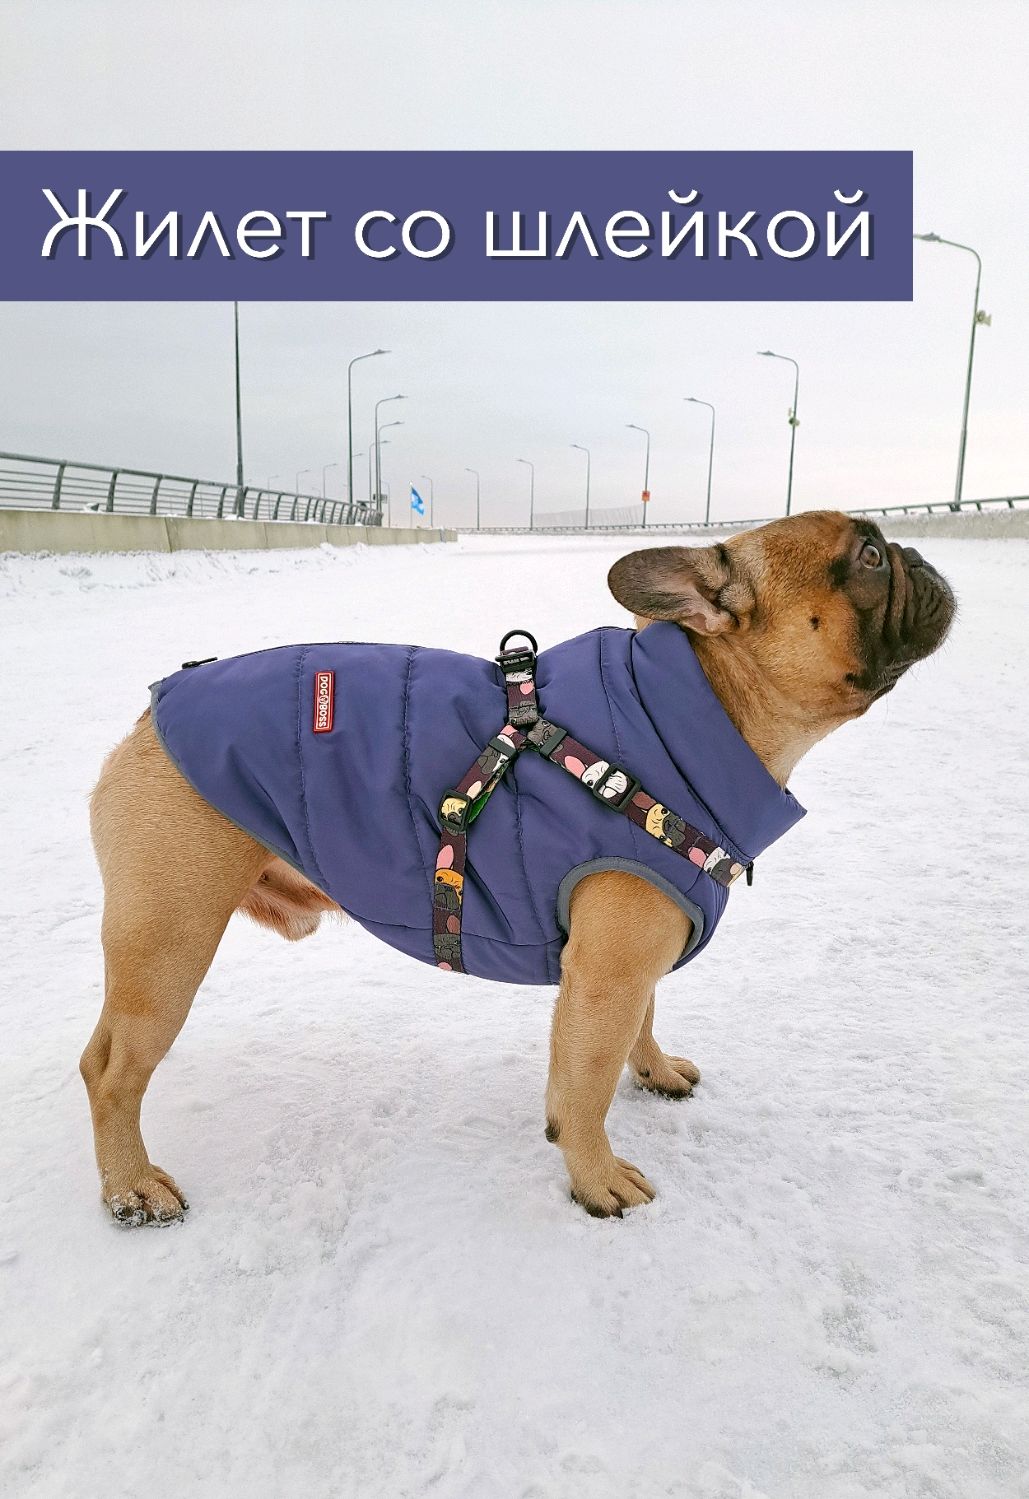 Одежда модная бренд весна/лето собаки одежда для иностранной торговли вязаный жилет-свитер.